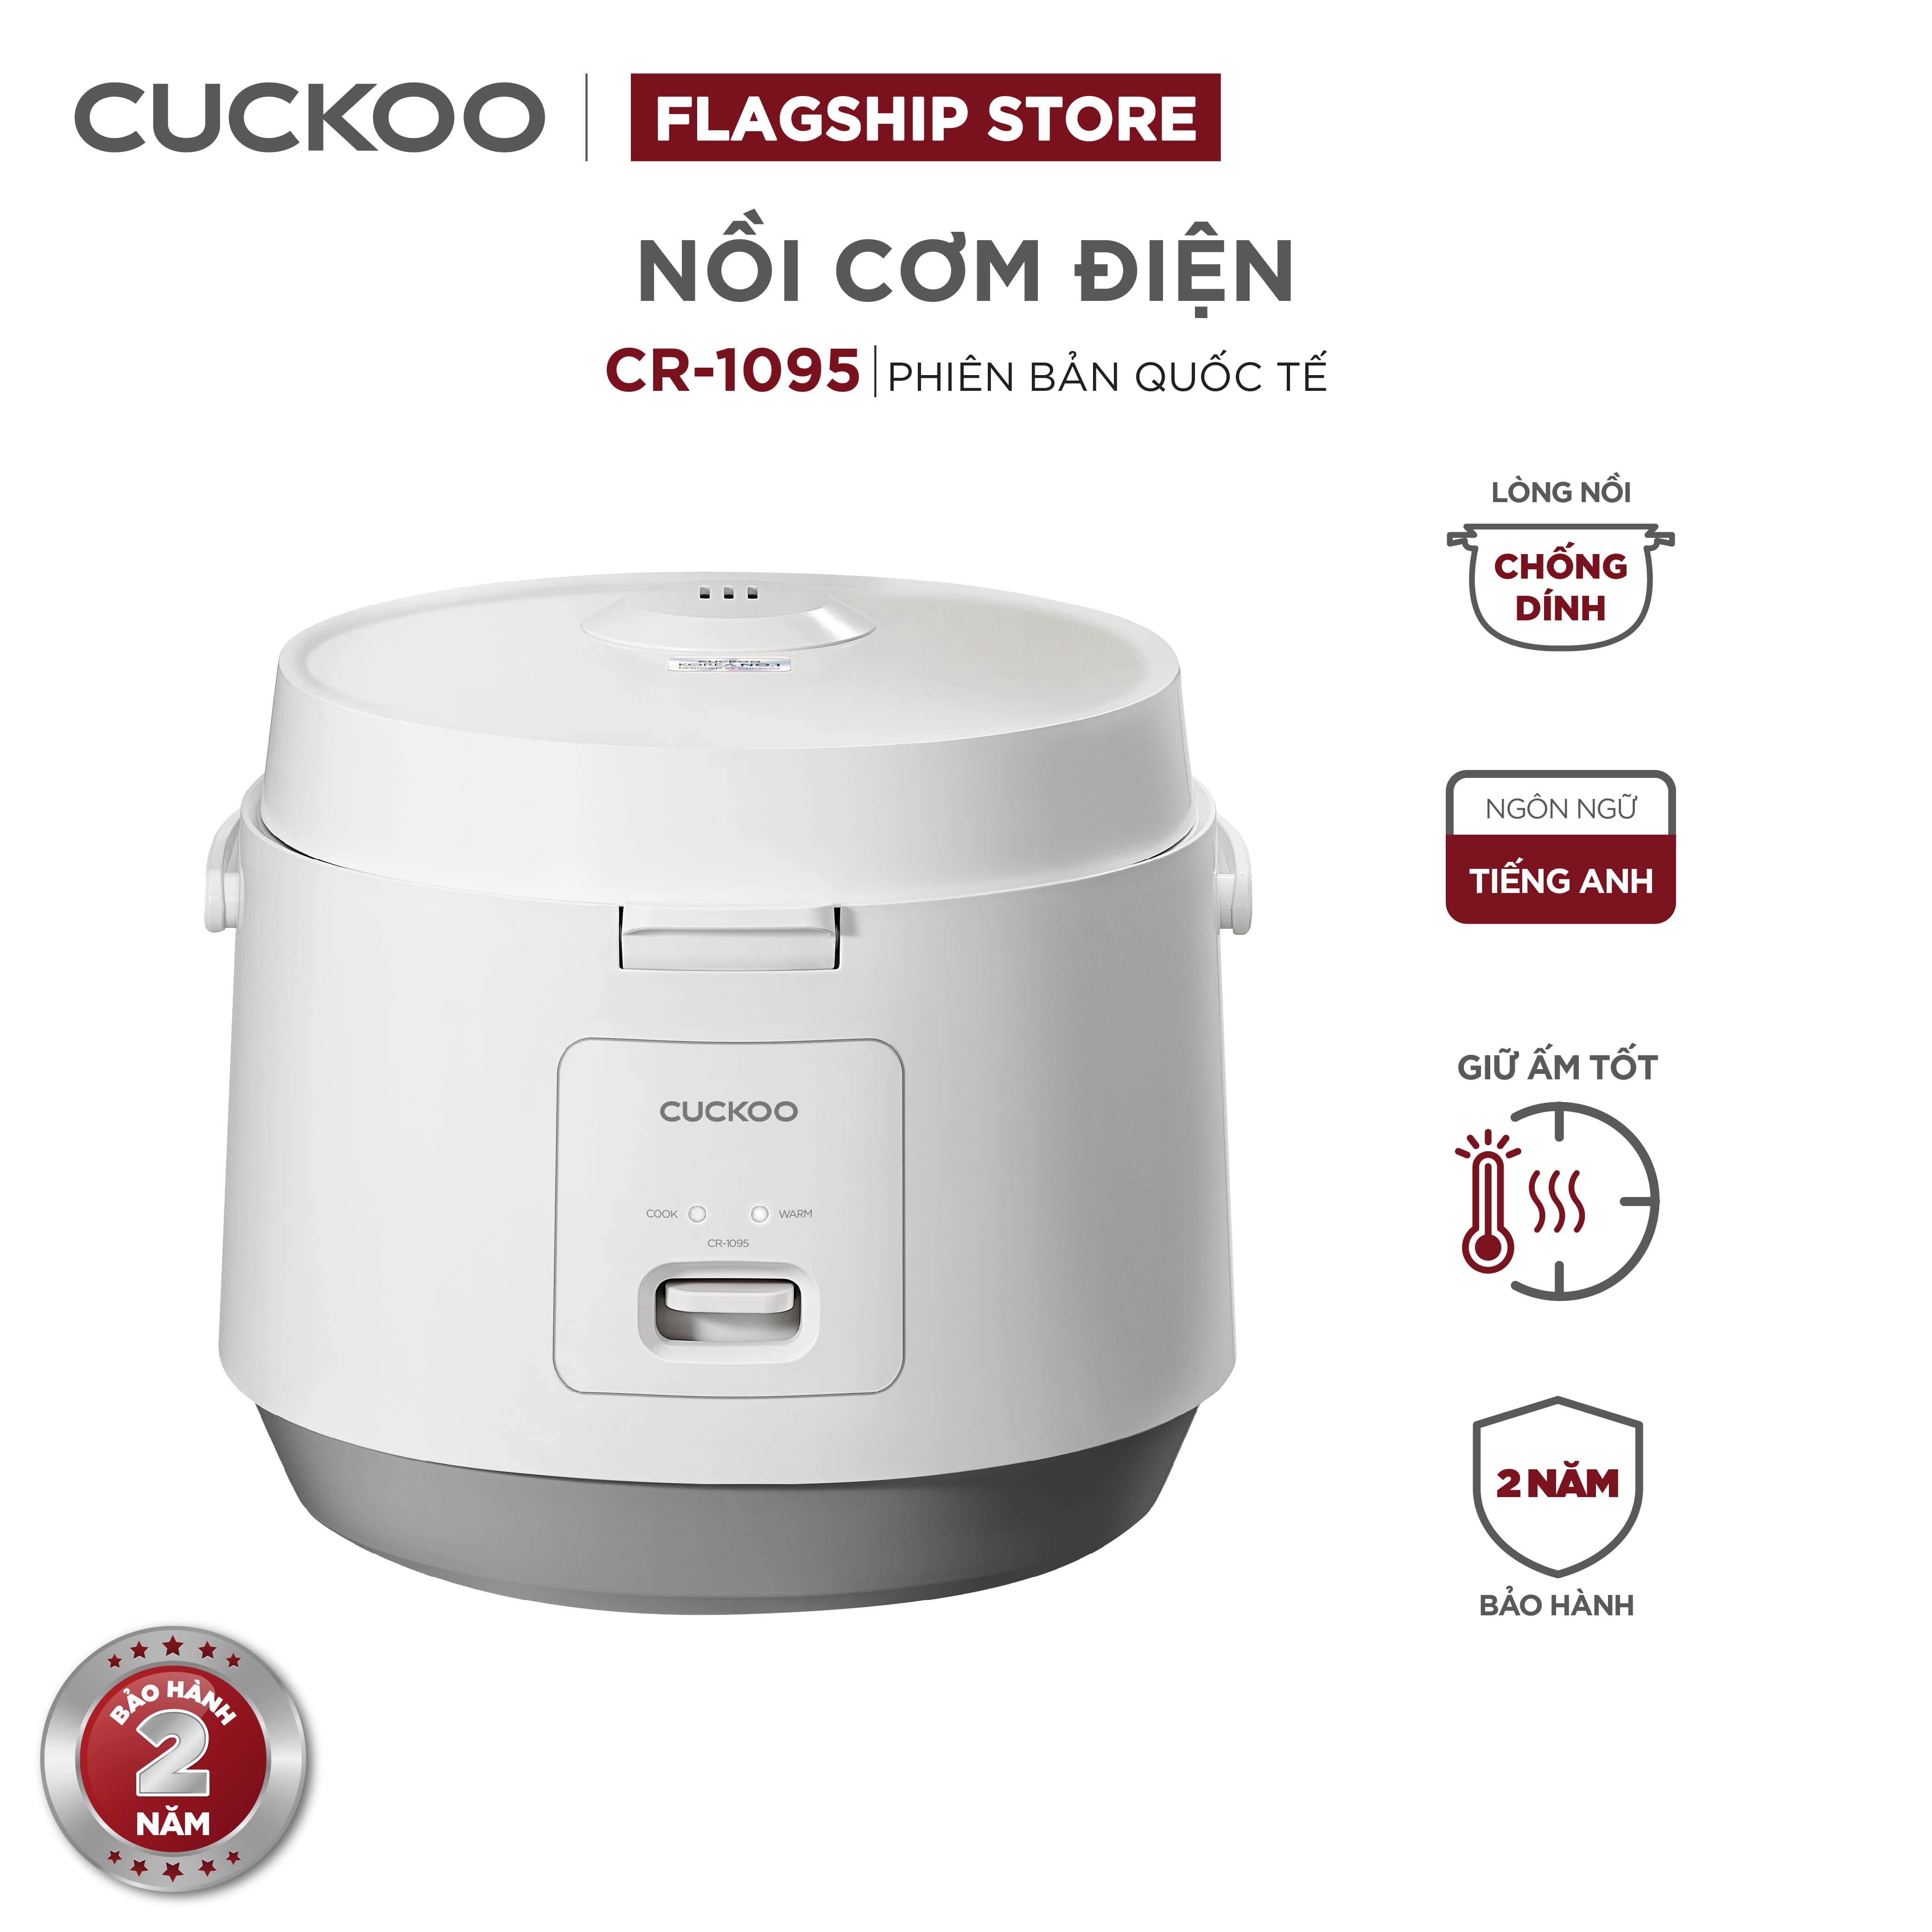 Nồi cơm điện Cuckoo 1.8L CR-1095 màu trắng- Công nghệ nhiệt 3D - bản quốc tế tiếng Anh - Hàng chính hãng Cuckoo Việt Nam